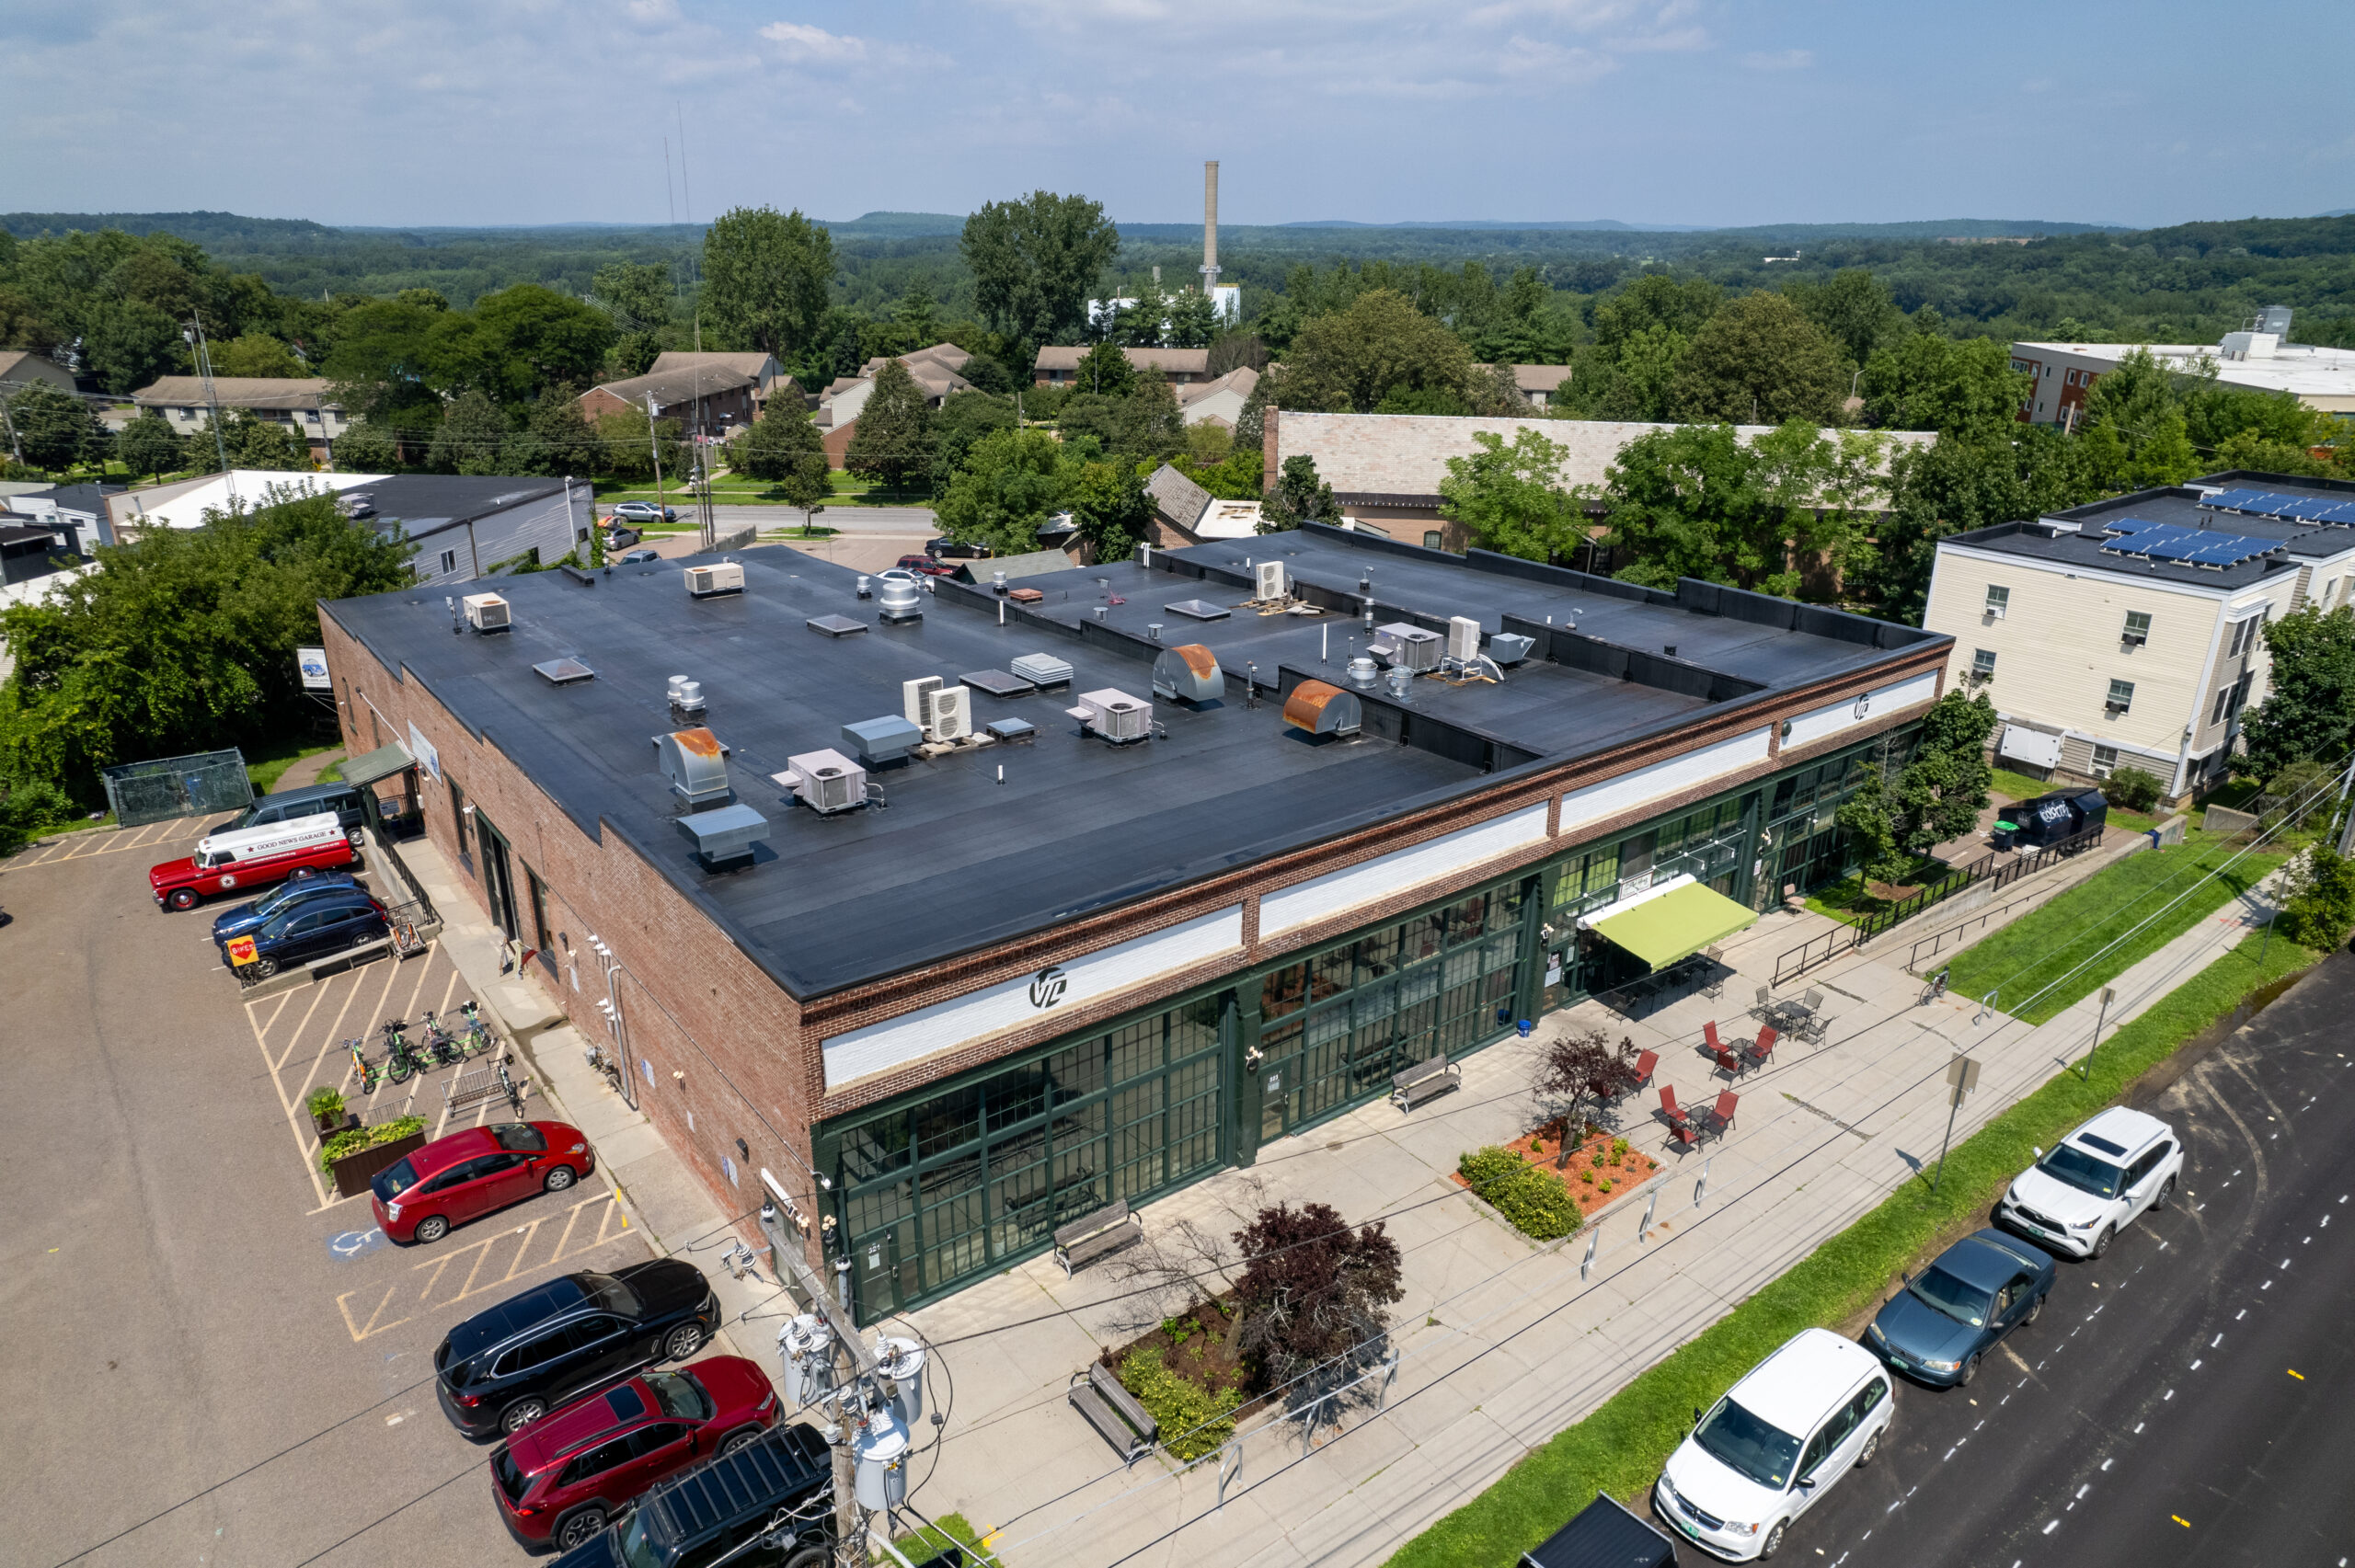 EPDM Rubber Roof Replacement – Commercial Building in Burlington, VT